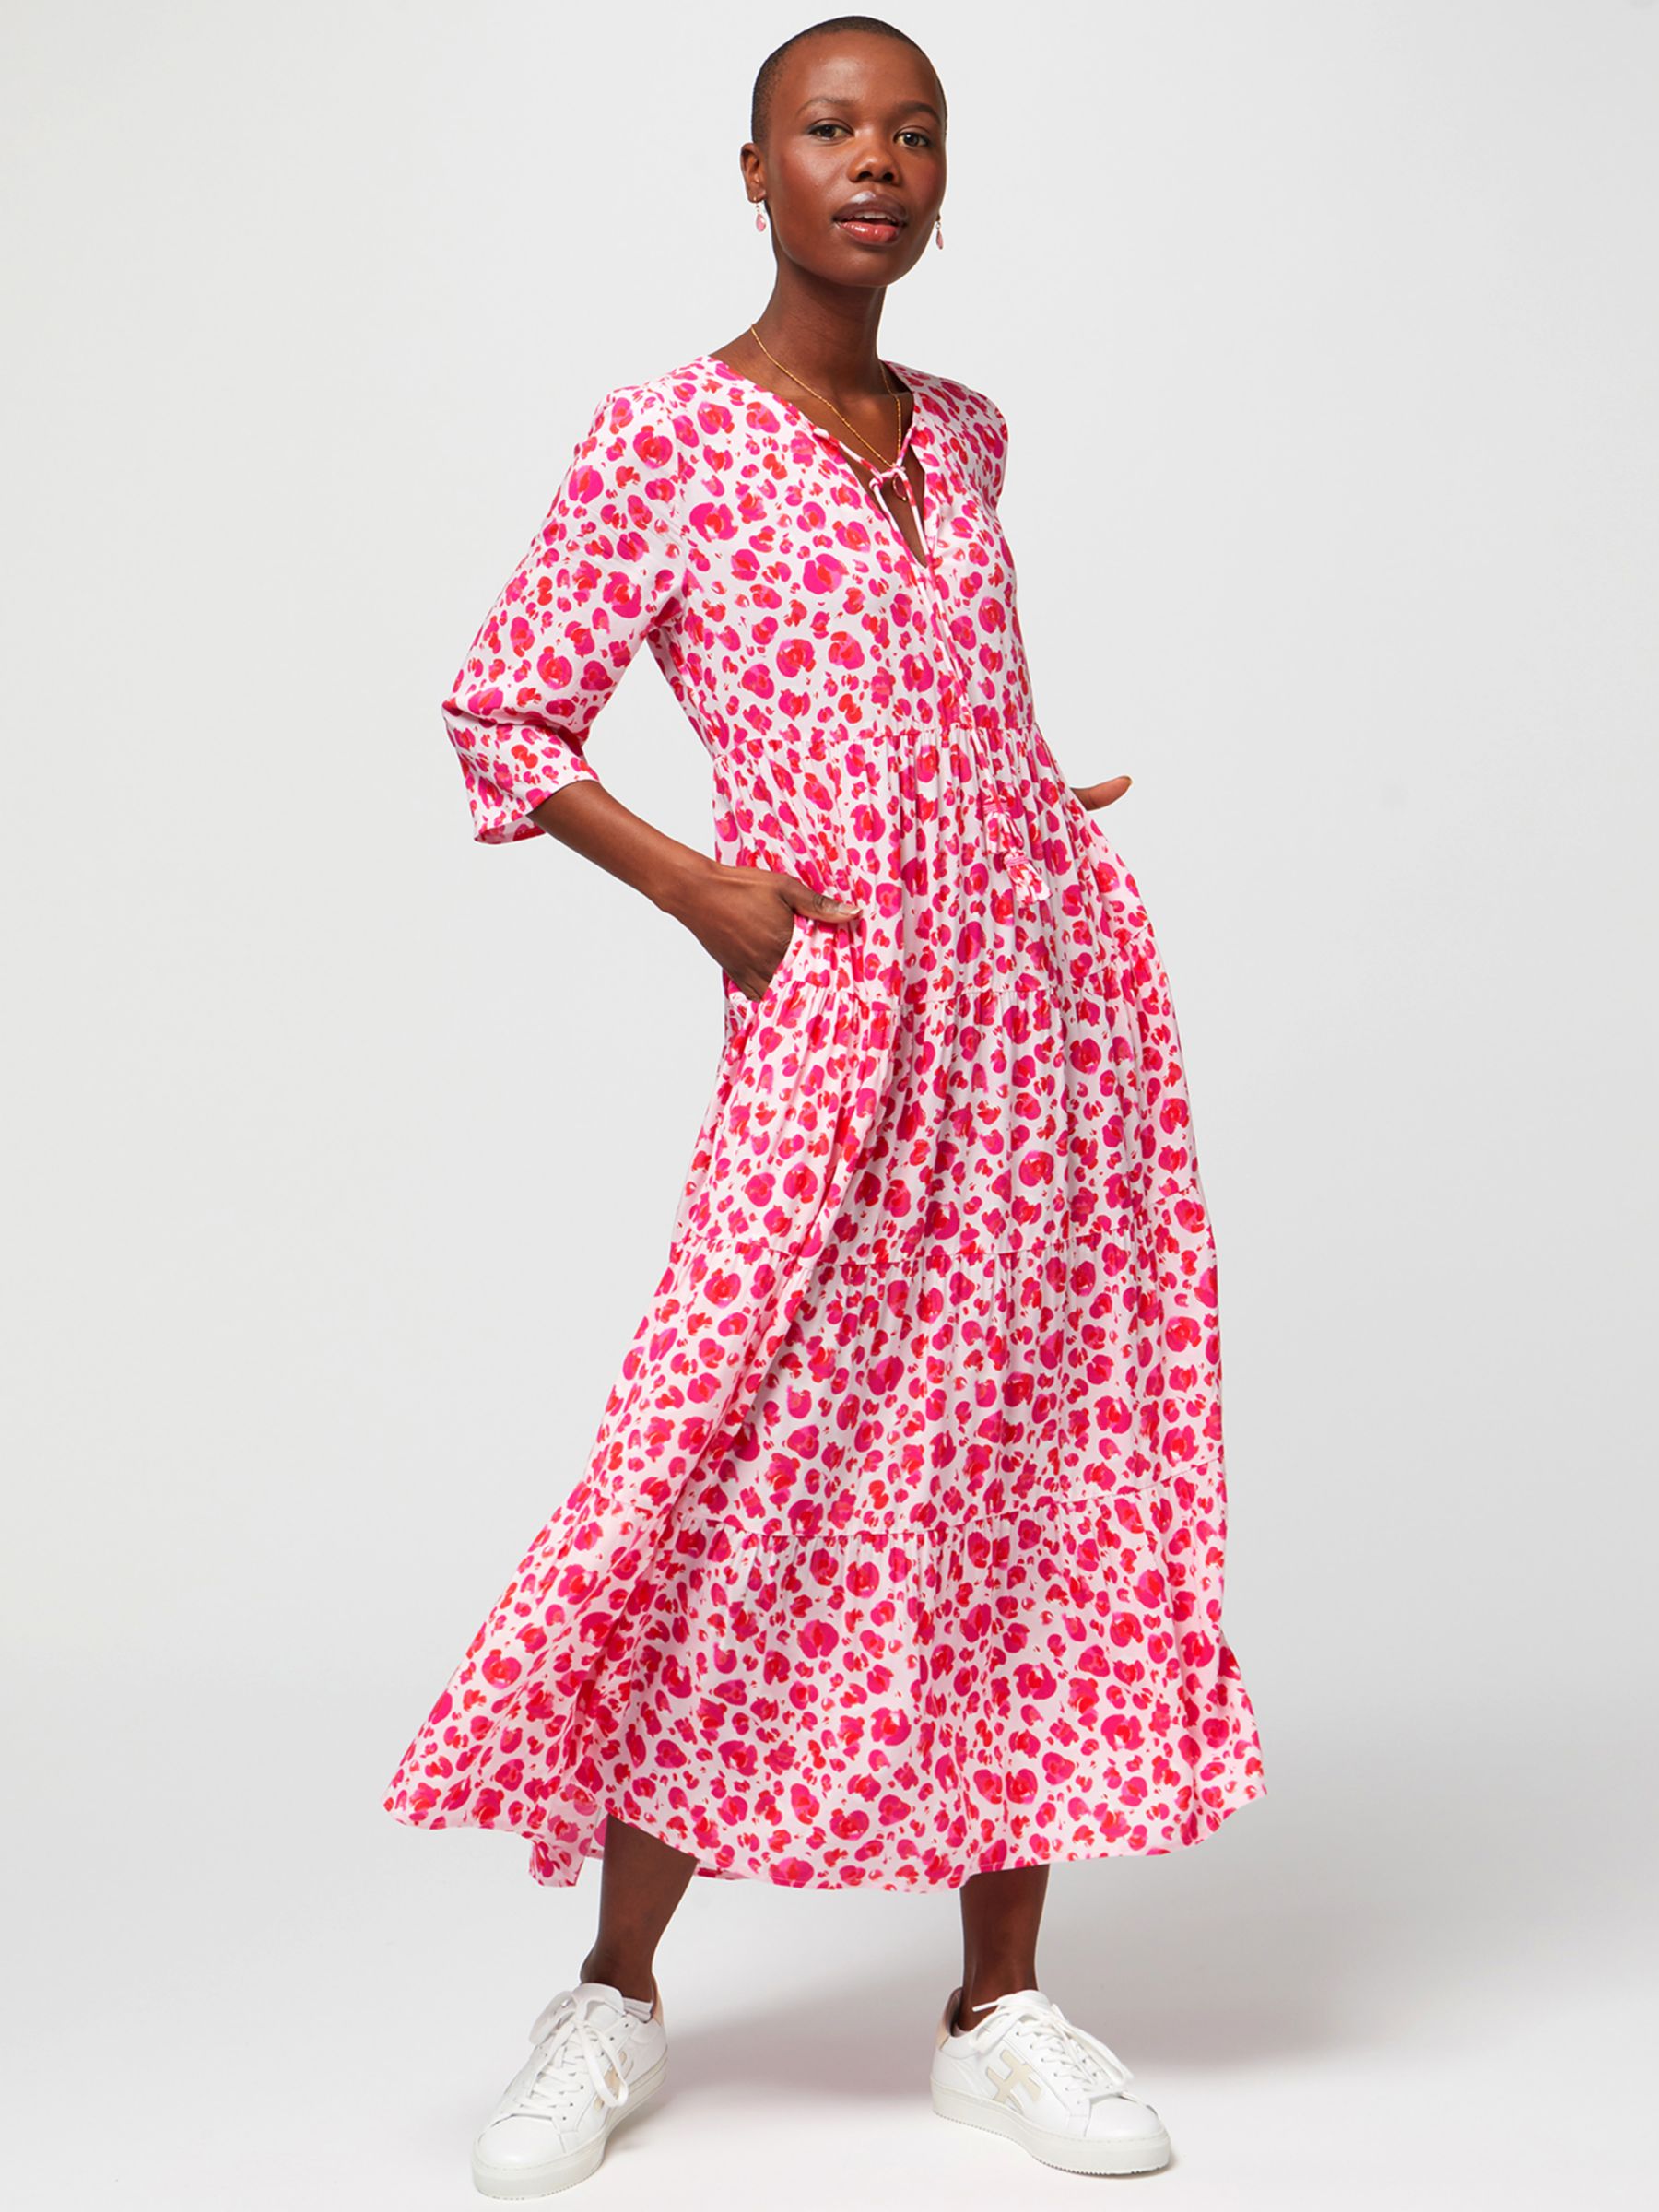 Aspiga Emma Light Weight Dress, Cheetah Pink at John Lewis & Partners